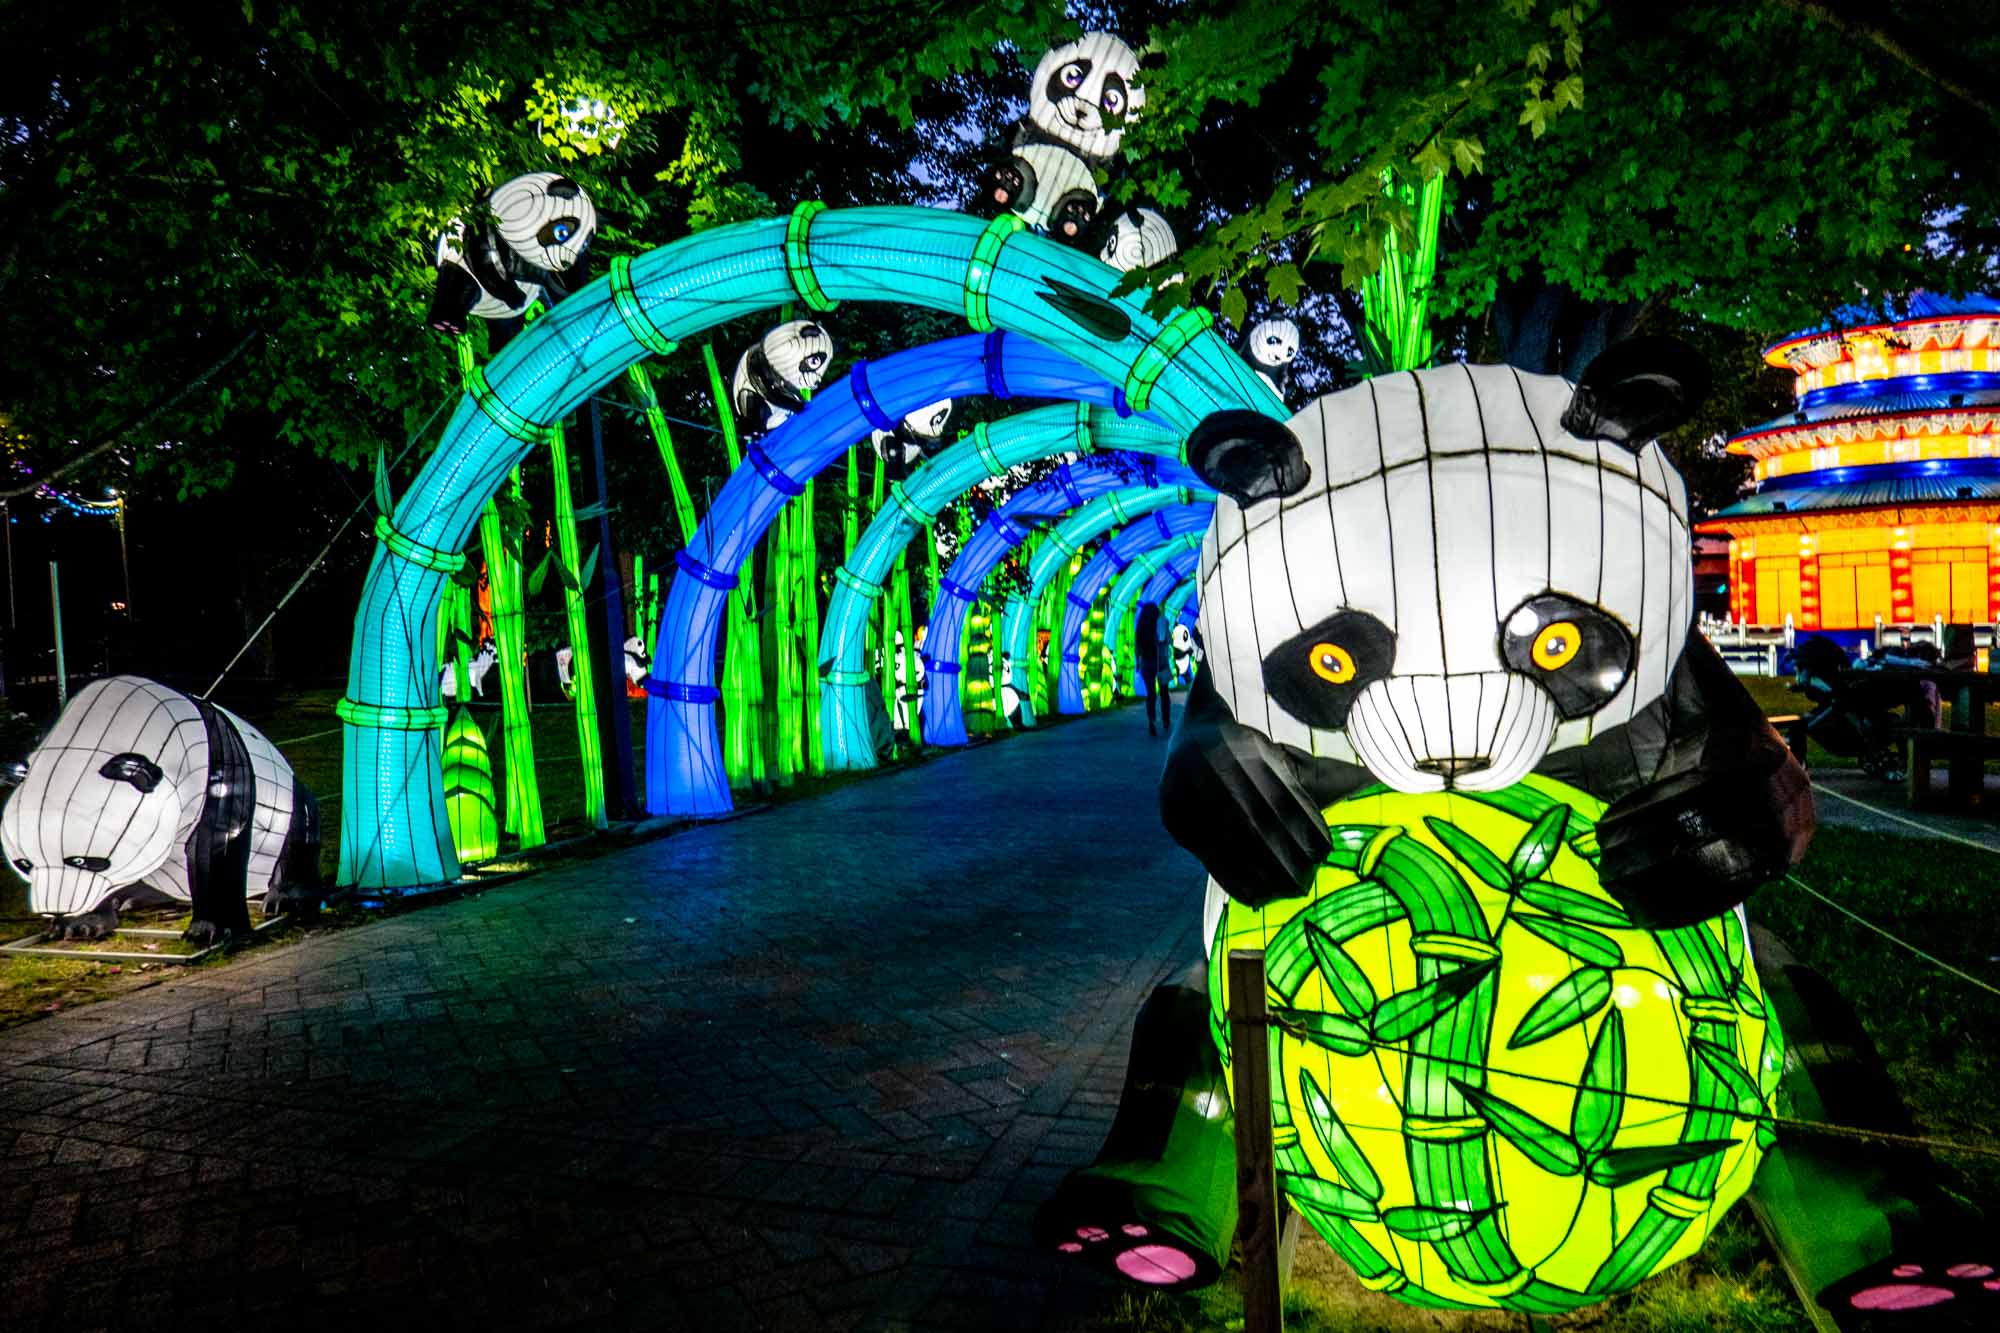 Panda and bamboo lanterns lit up at nights